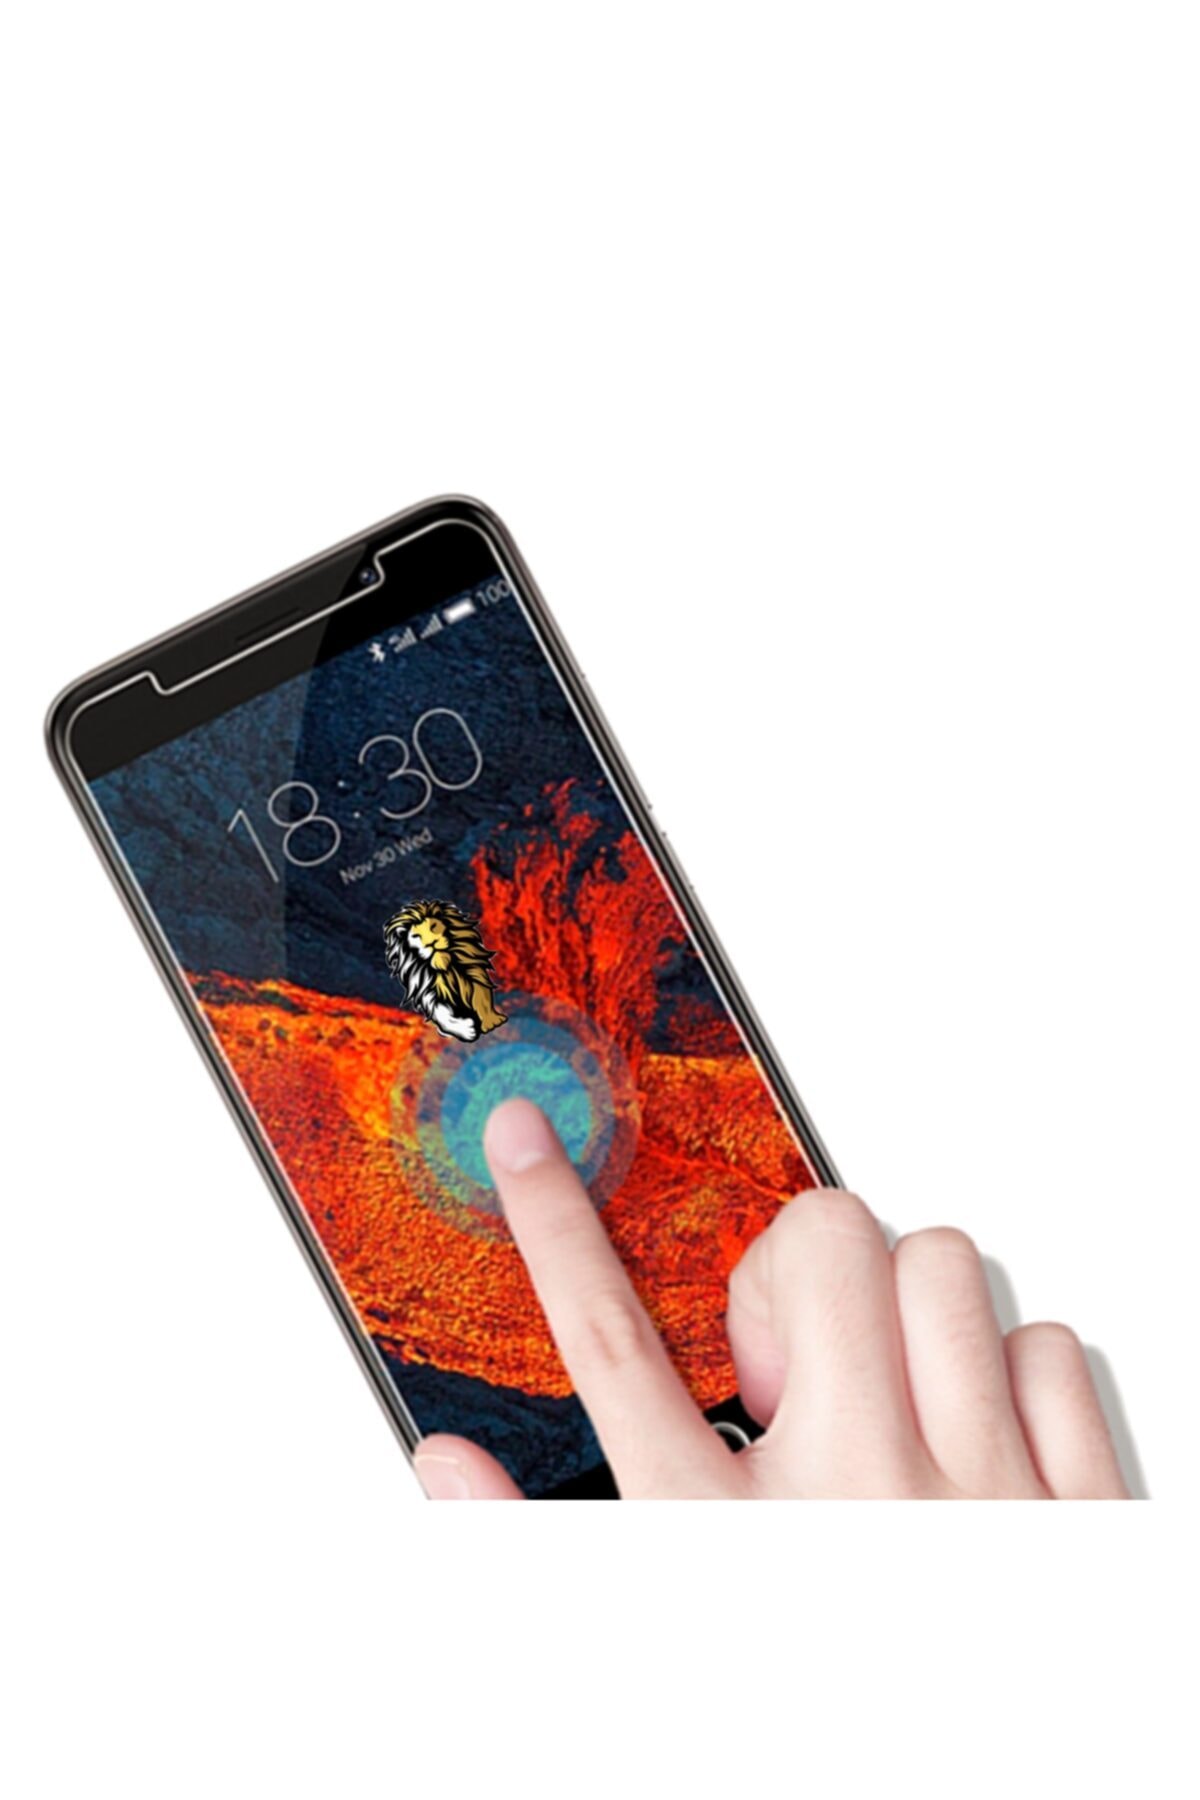 tutarlı delirmek Yıl  ucuzmi Samsung A50 Nano Ekran Koruyucu Film Kırılmaz Cam Çizilmez Özellik  9h Hd Ekran Koruma Fiyatı, Yorumları - TRENDYOL